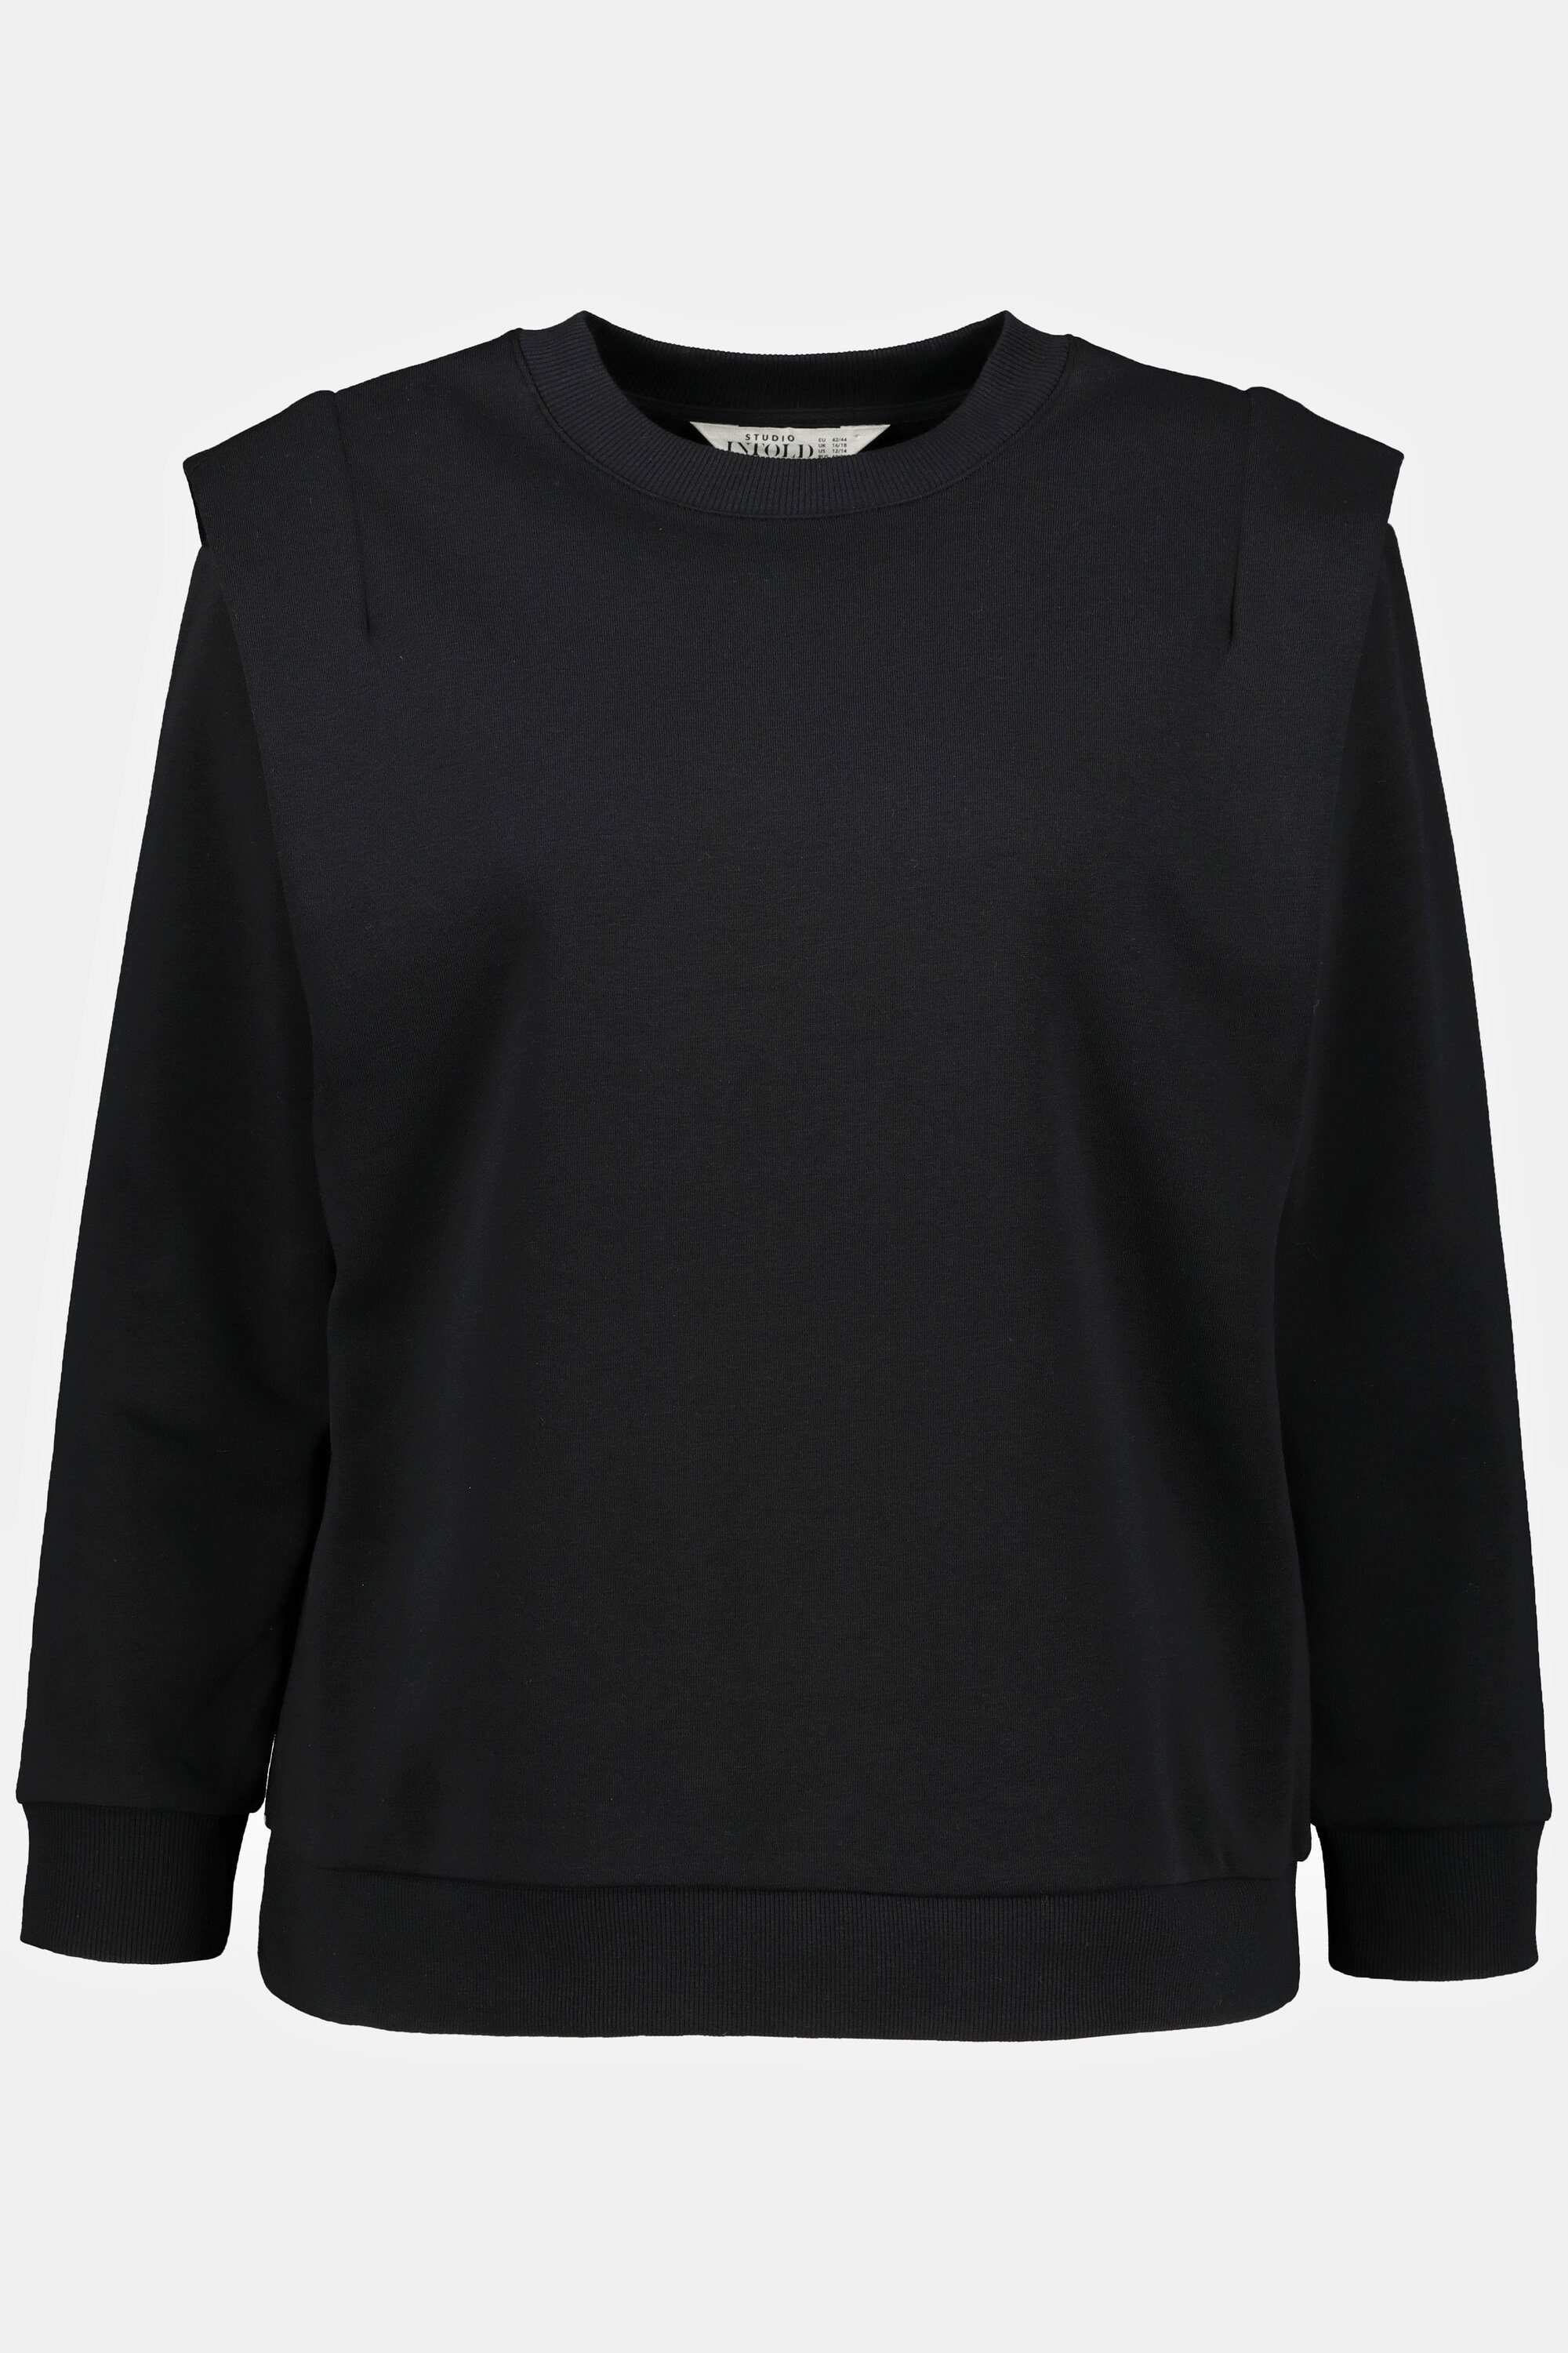 Damen Pullover Studio Untold Sweatshirt Sweatshirt oversized Rundhals Langarm